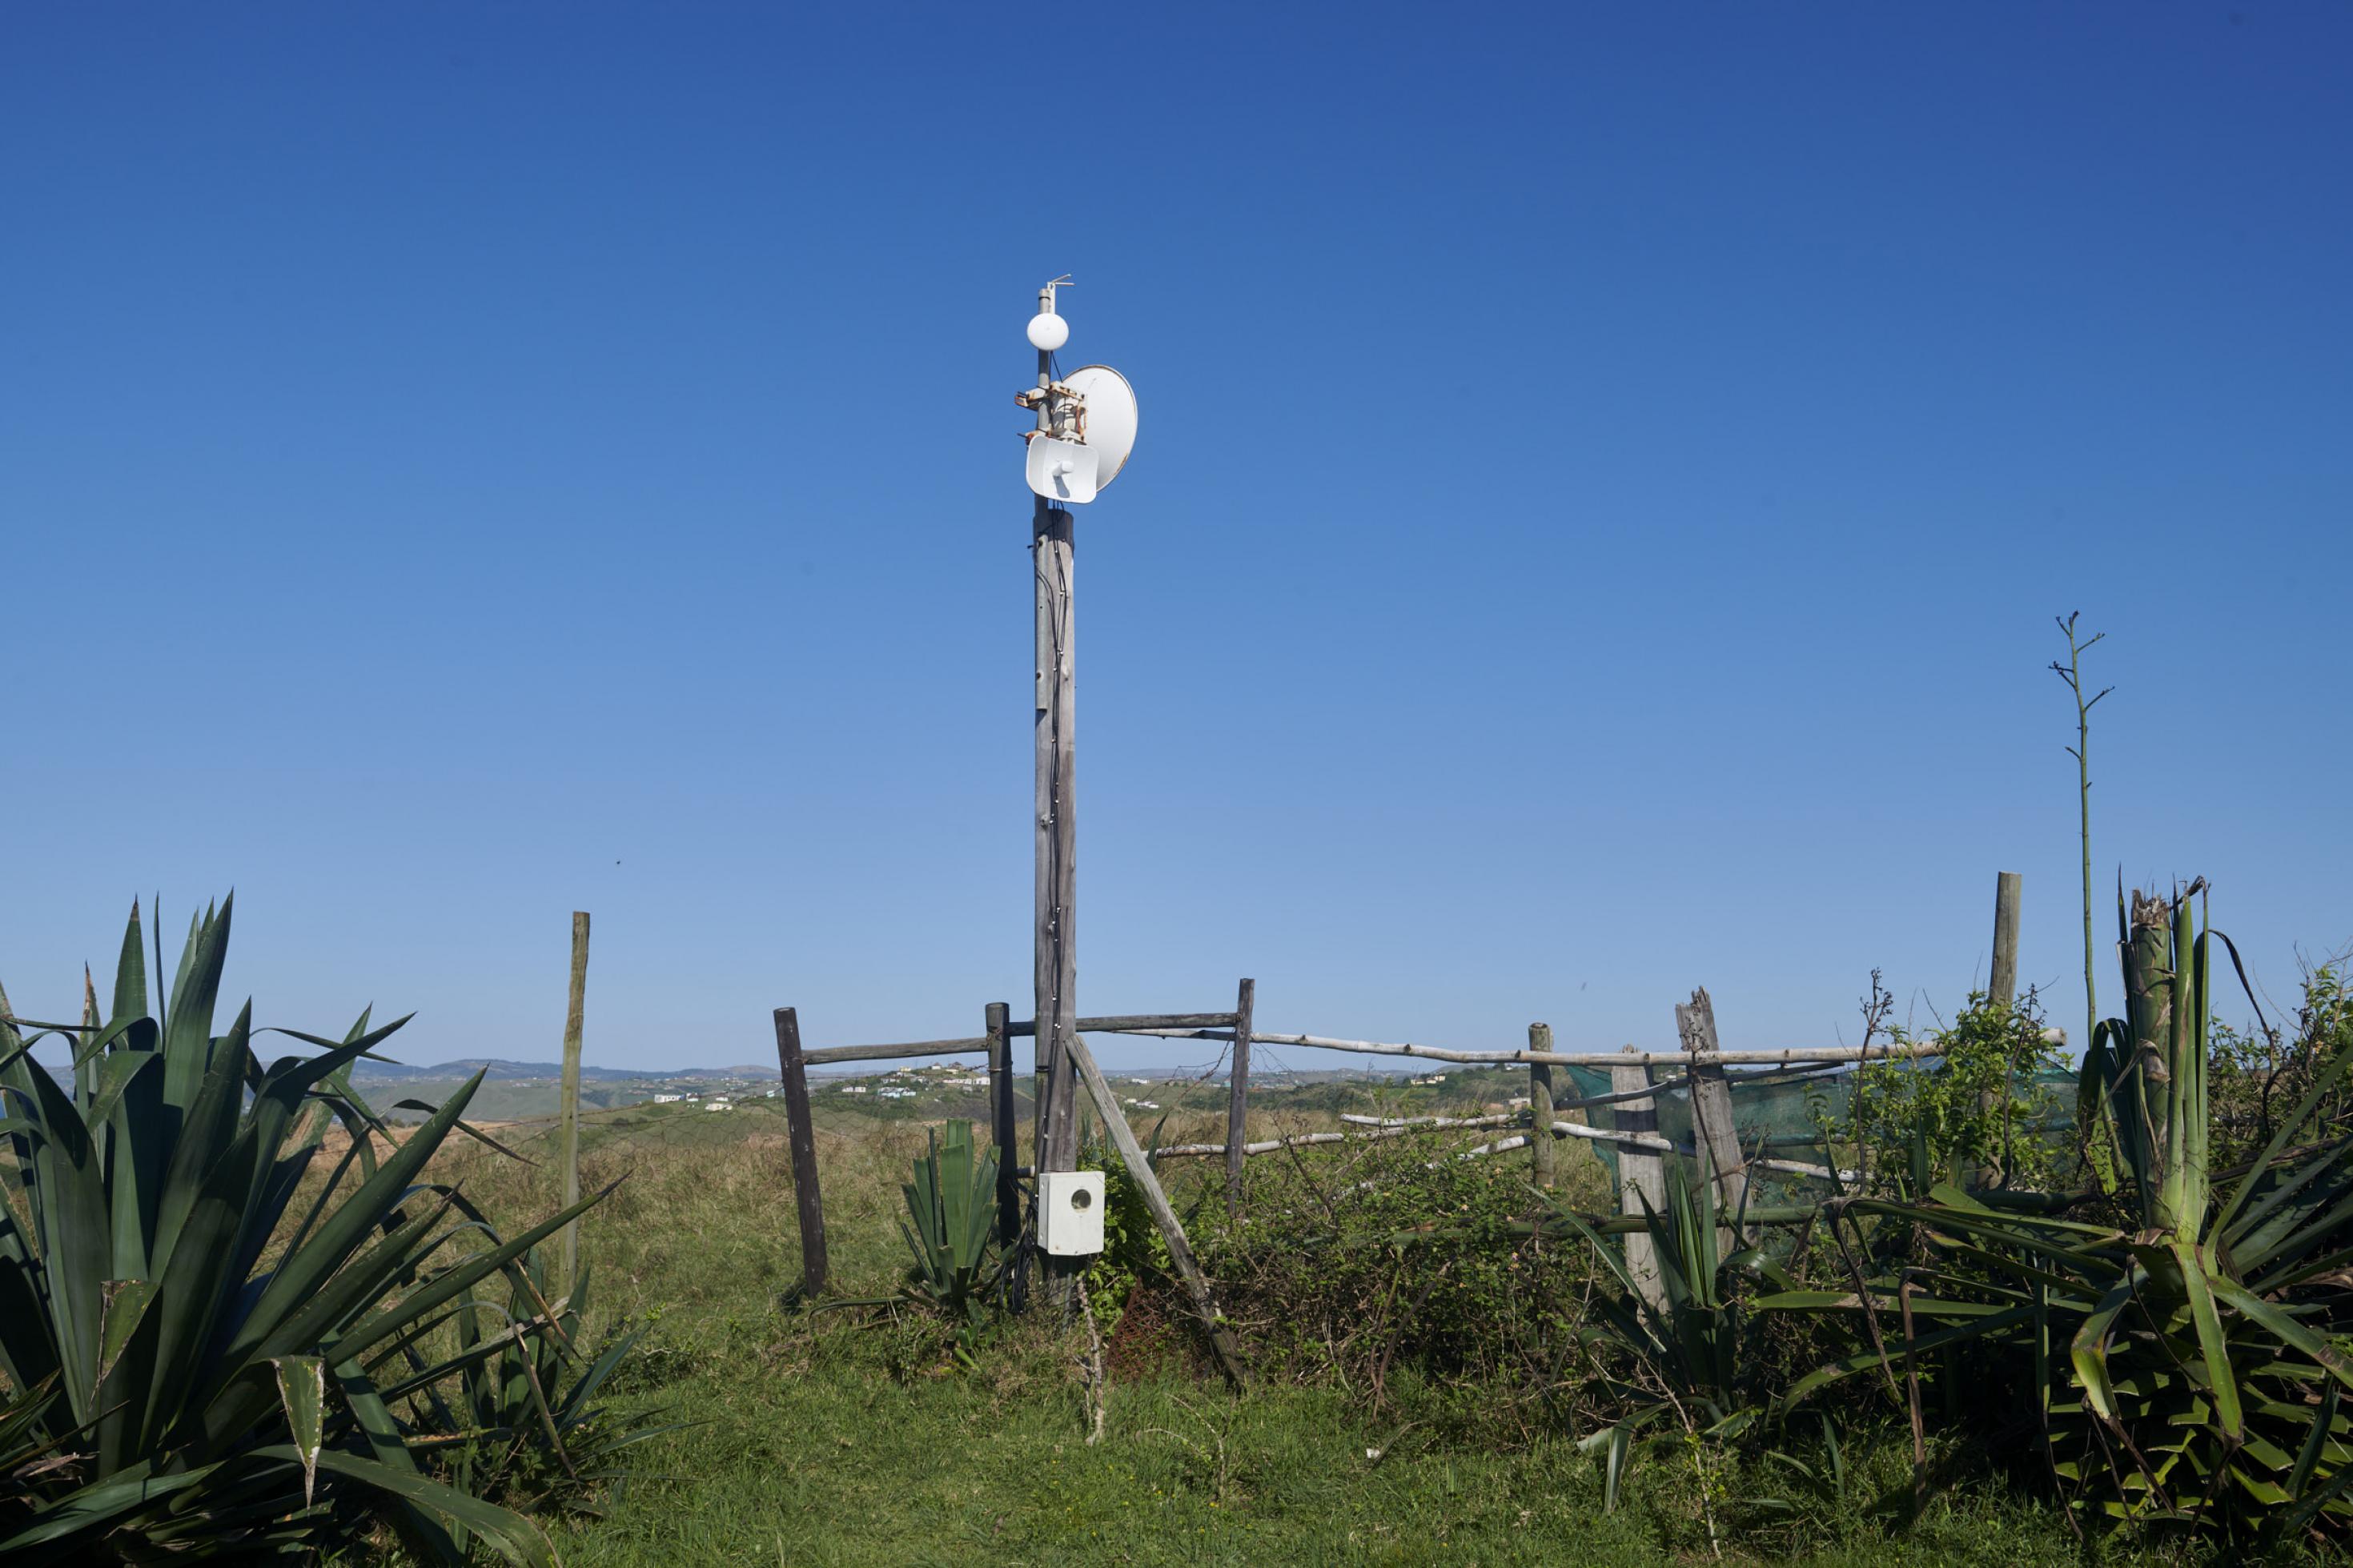 An einem Pfahl vor einem Holzzaun ist die Antenne des Hotspots installiert